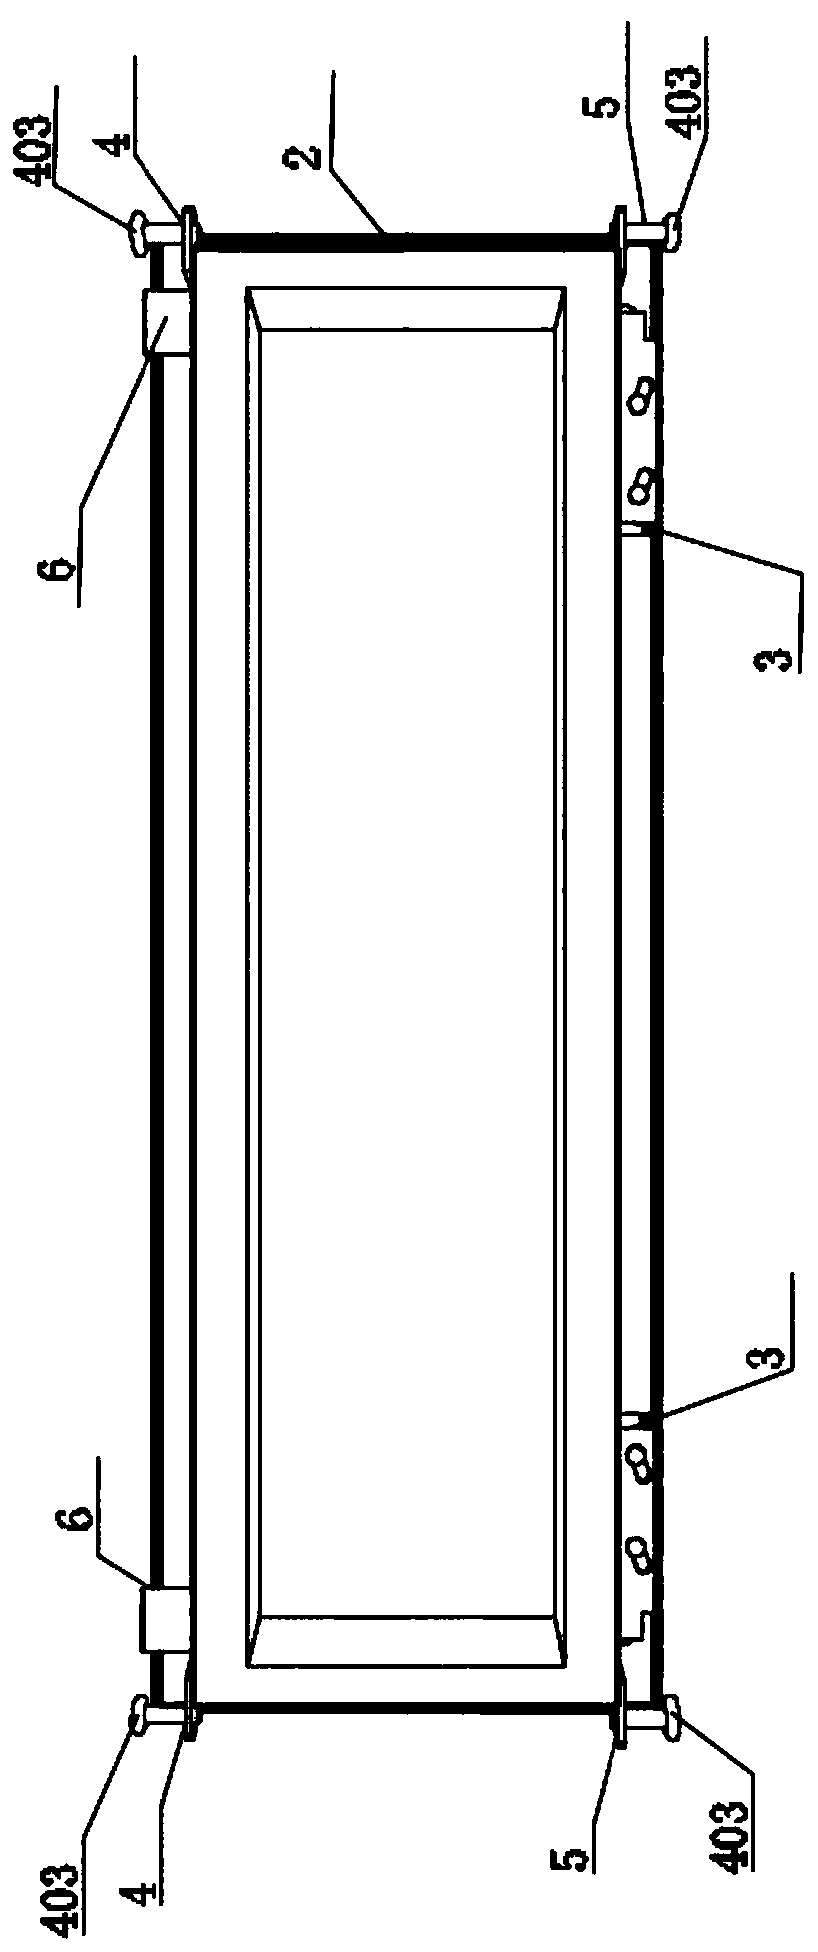 Retractable structure of sliding door and window